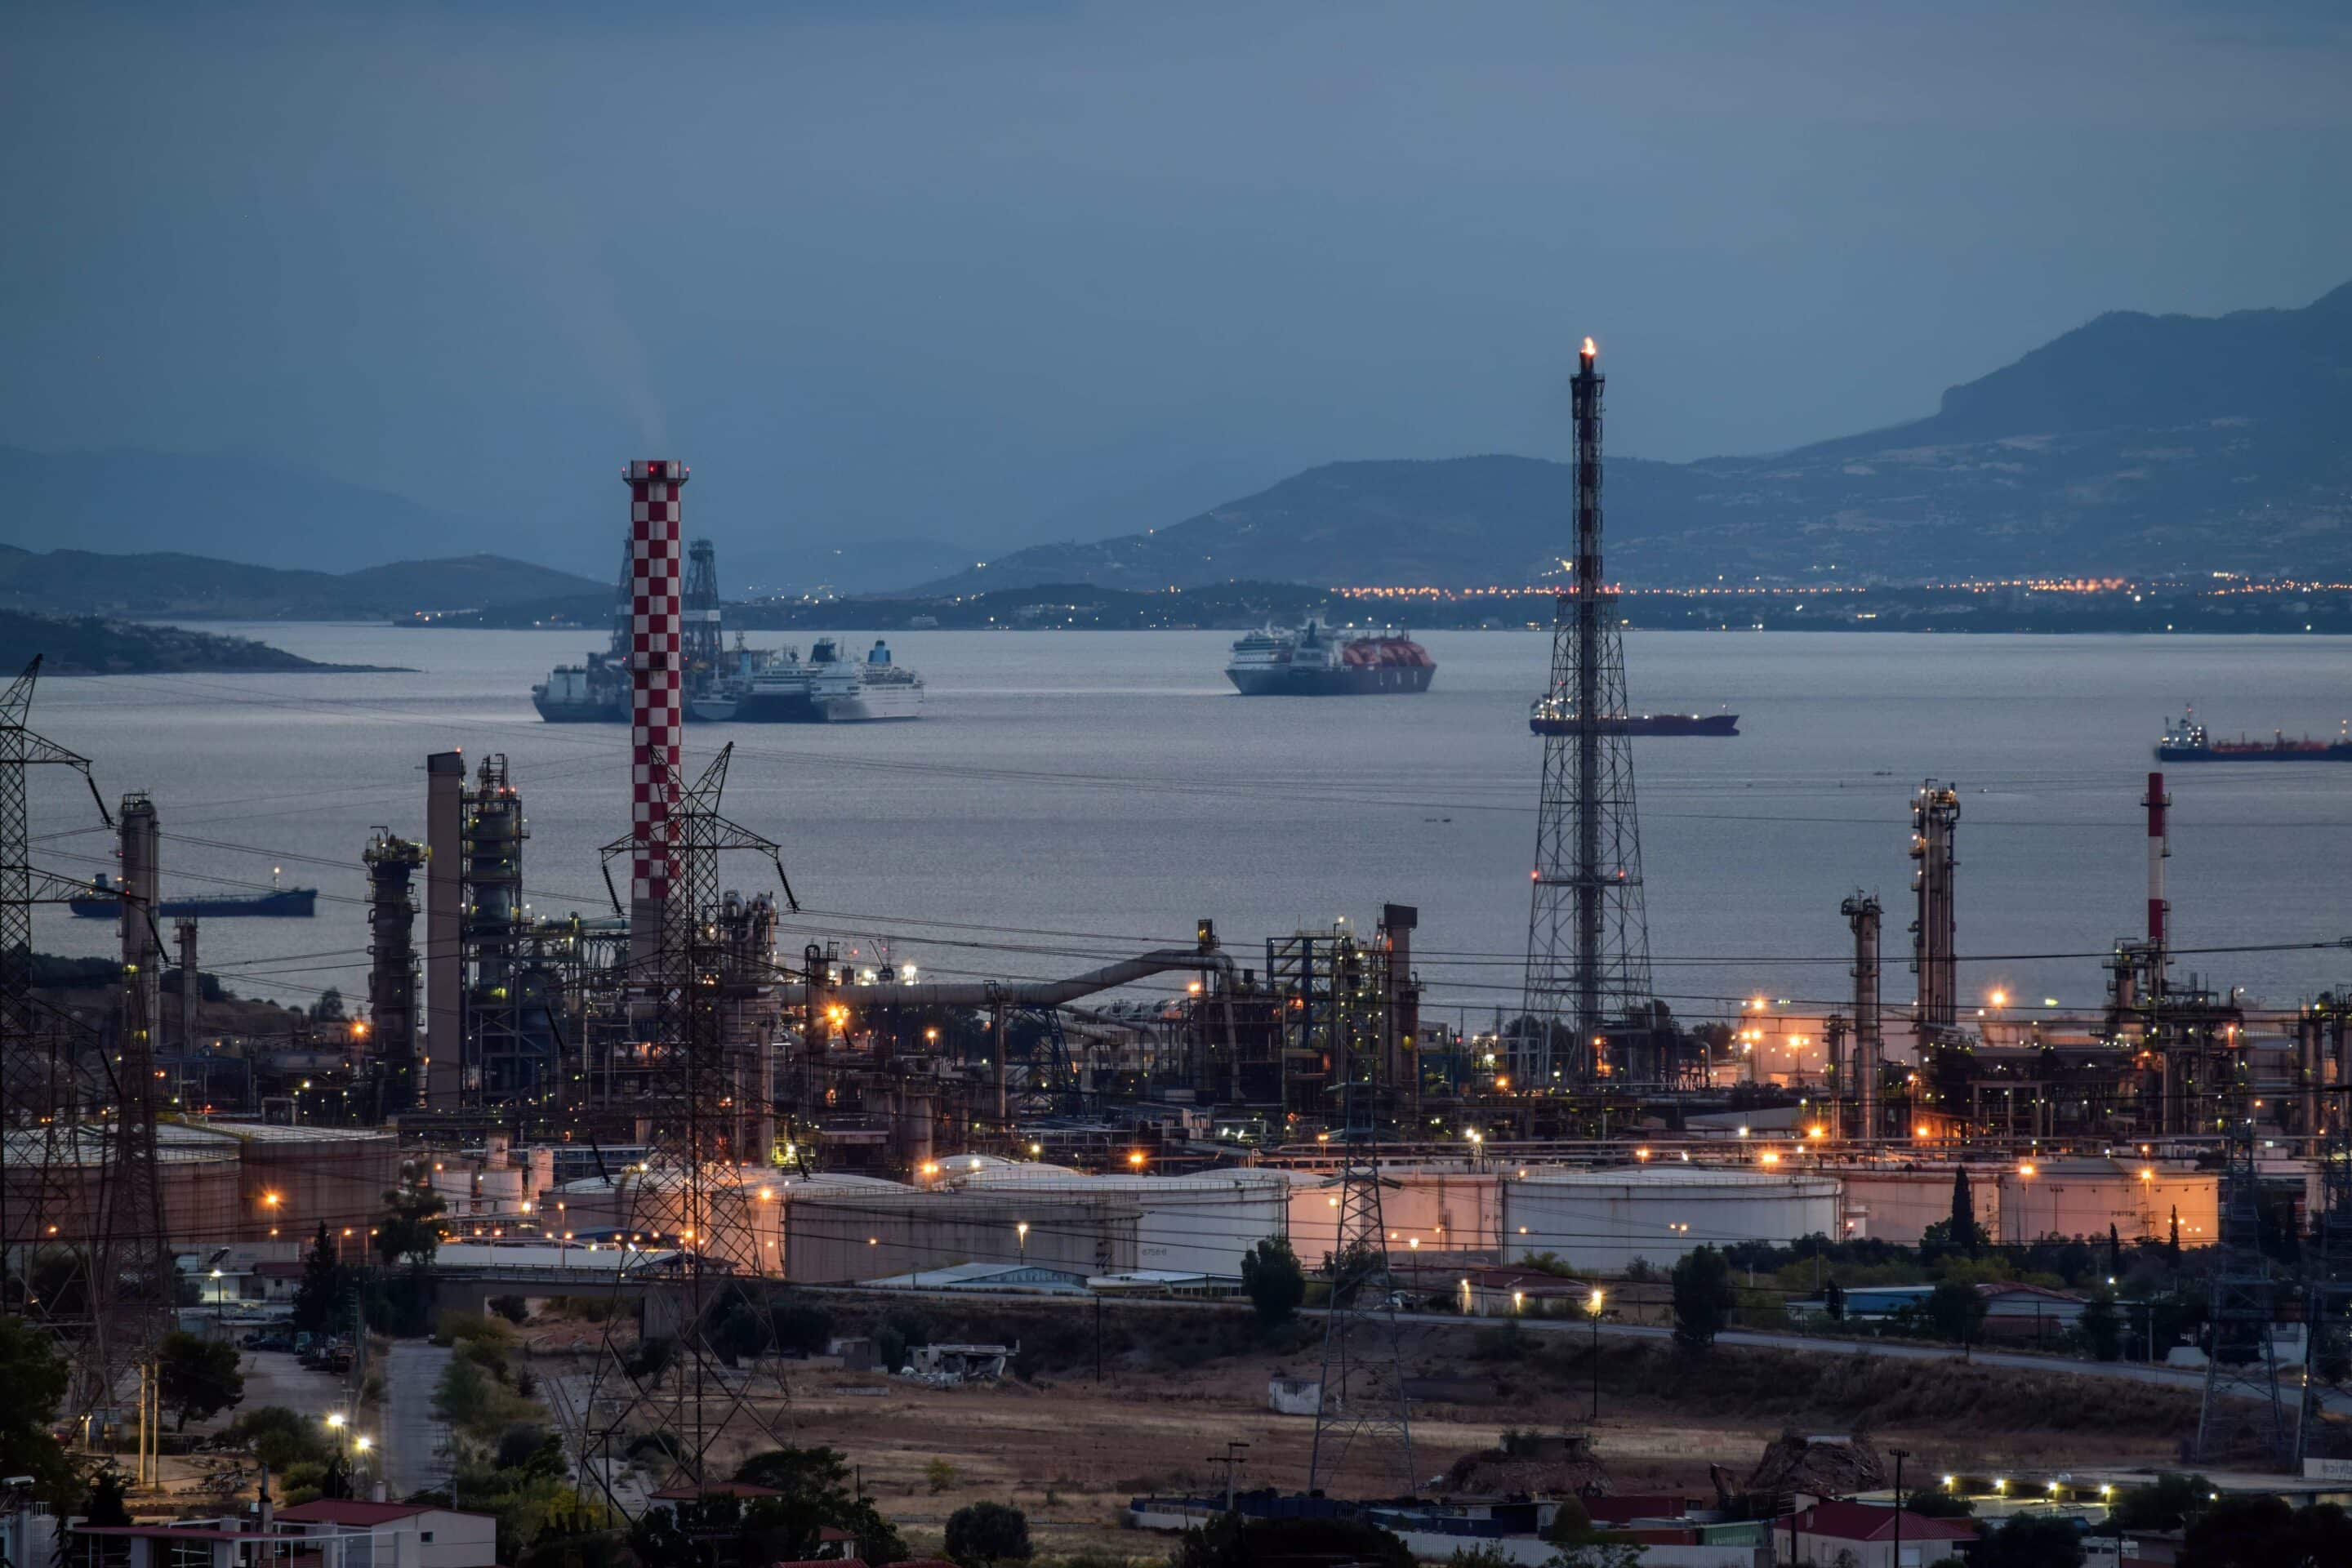 Raffinerie de pétrole dans la région d'Aspropyrgos, dans la banlieue de la capitale grecque.
Crédits : Dimitris Aspiotis/Shutterstock